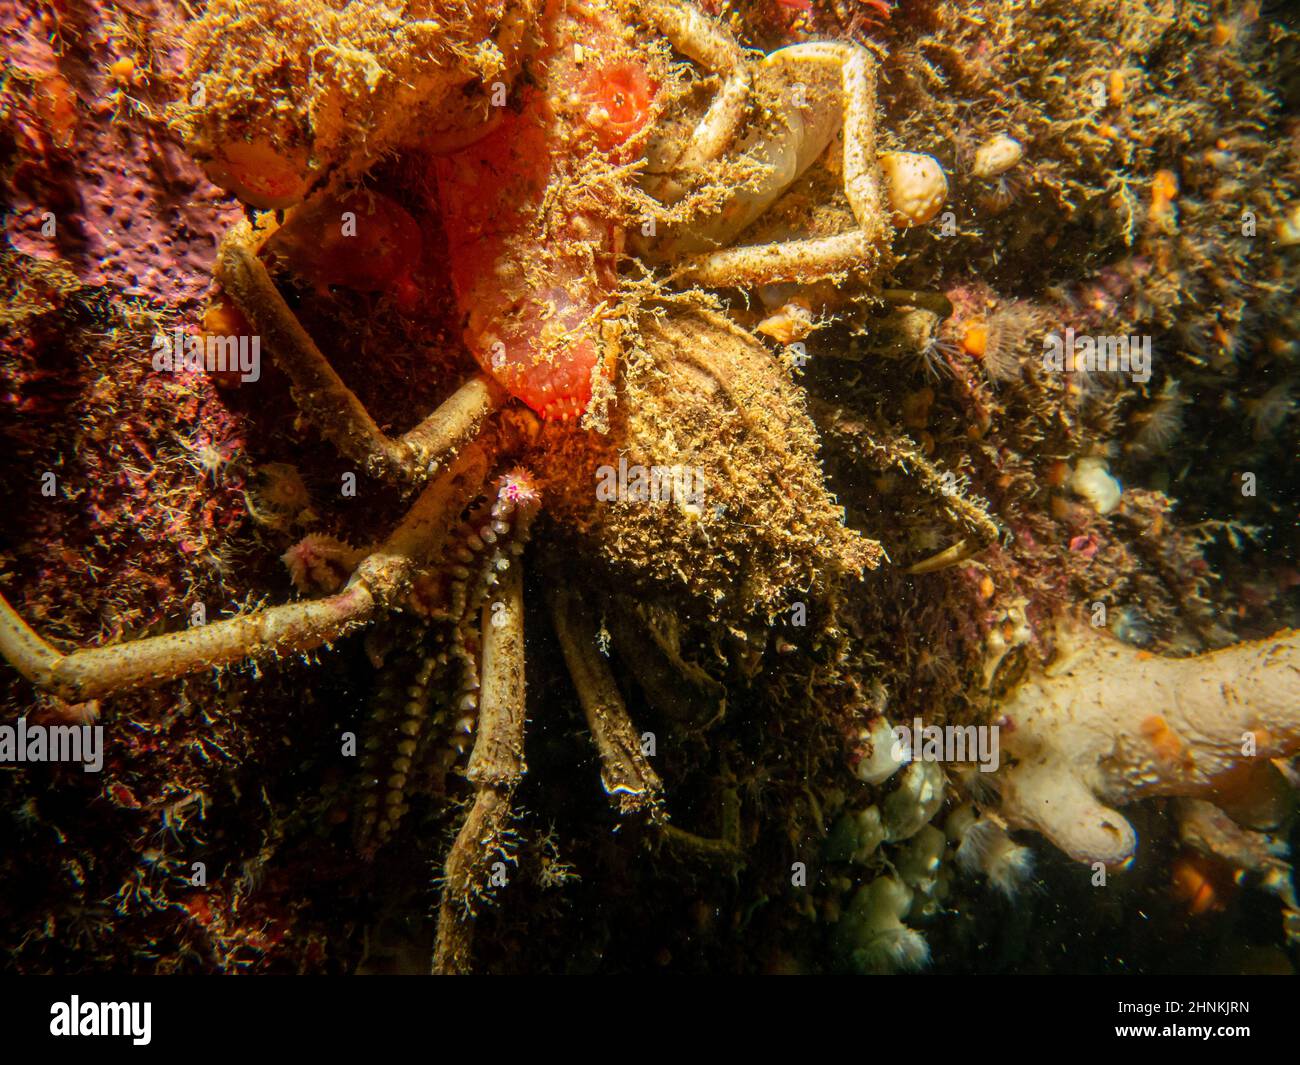 Ein Nahaufnahme Bild von Ascidiacea, gemeinhin bekannt als die Ascidians oder Meer spritzt und eine Spinnenkrabbe. Bild von den Wetterinseln, Skageracksee, Westschweden Stockfoto